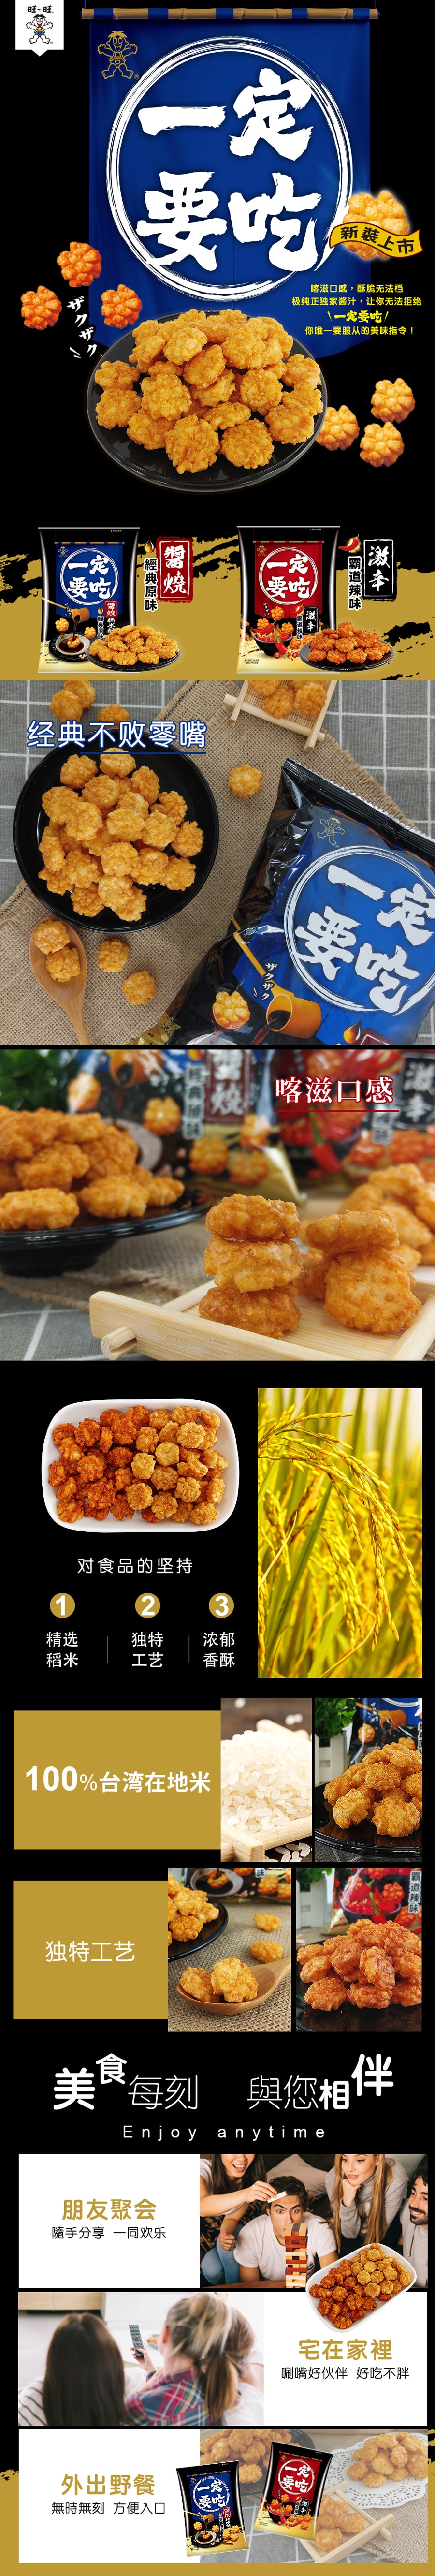 Taiwan Must Eat Series Original【Vegan】 Flavor Rice Cracker56g*10 Packs 560g